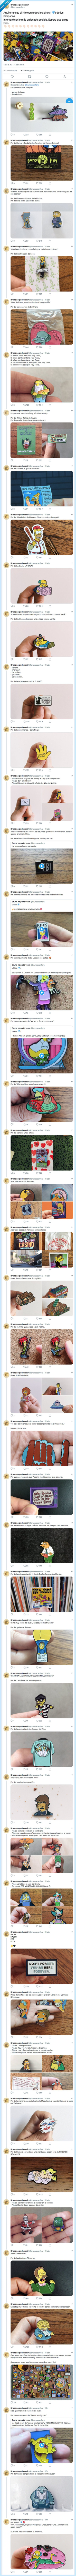 486242 - Comparte su colección de pins de los Simpsons y cada uno se supera de lo que molan, por @brunoacanfora